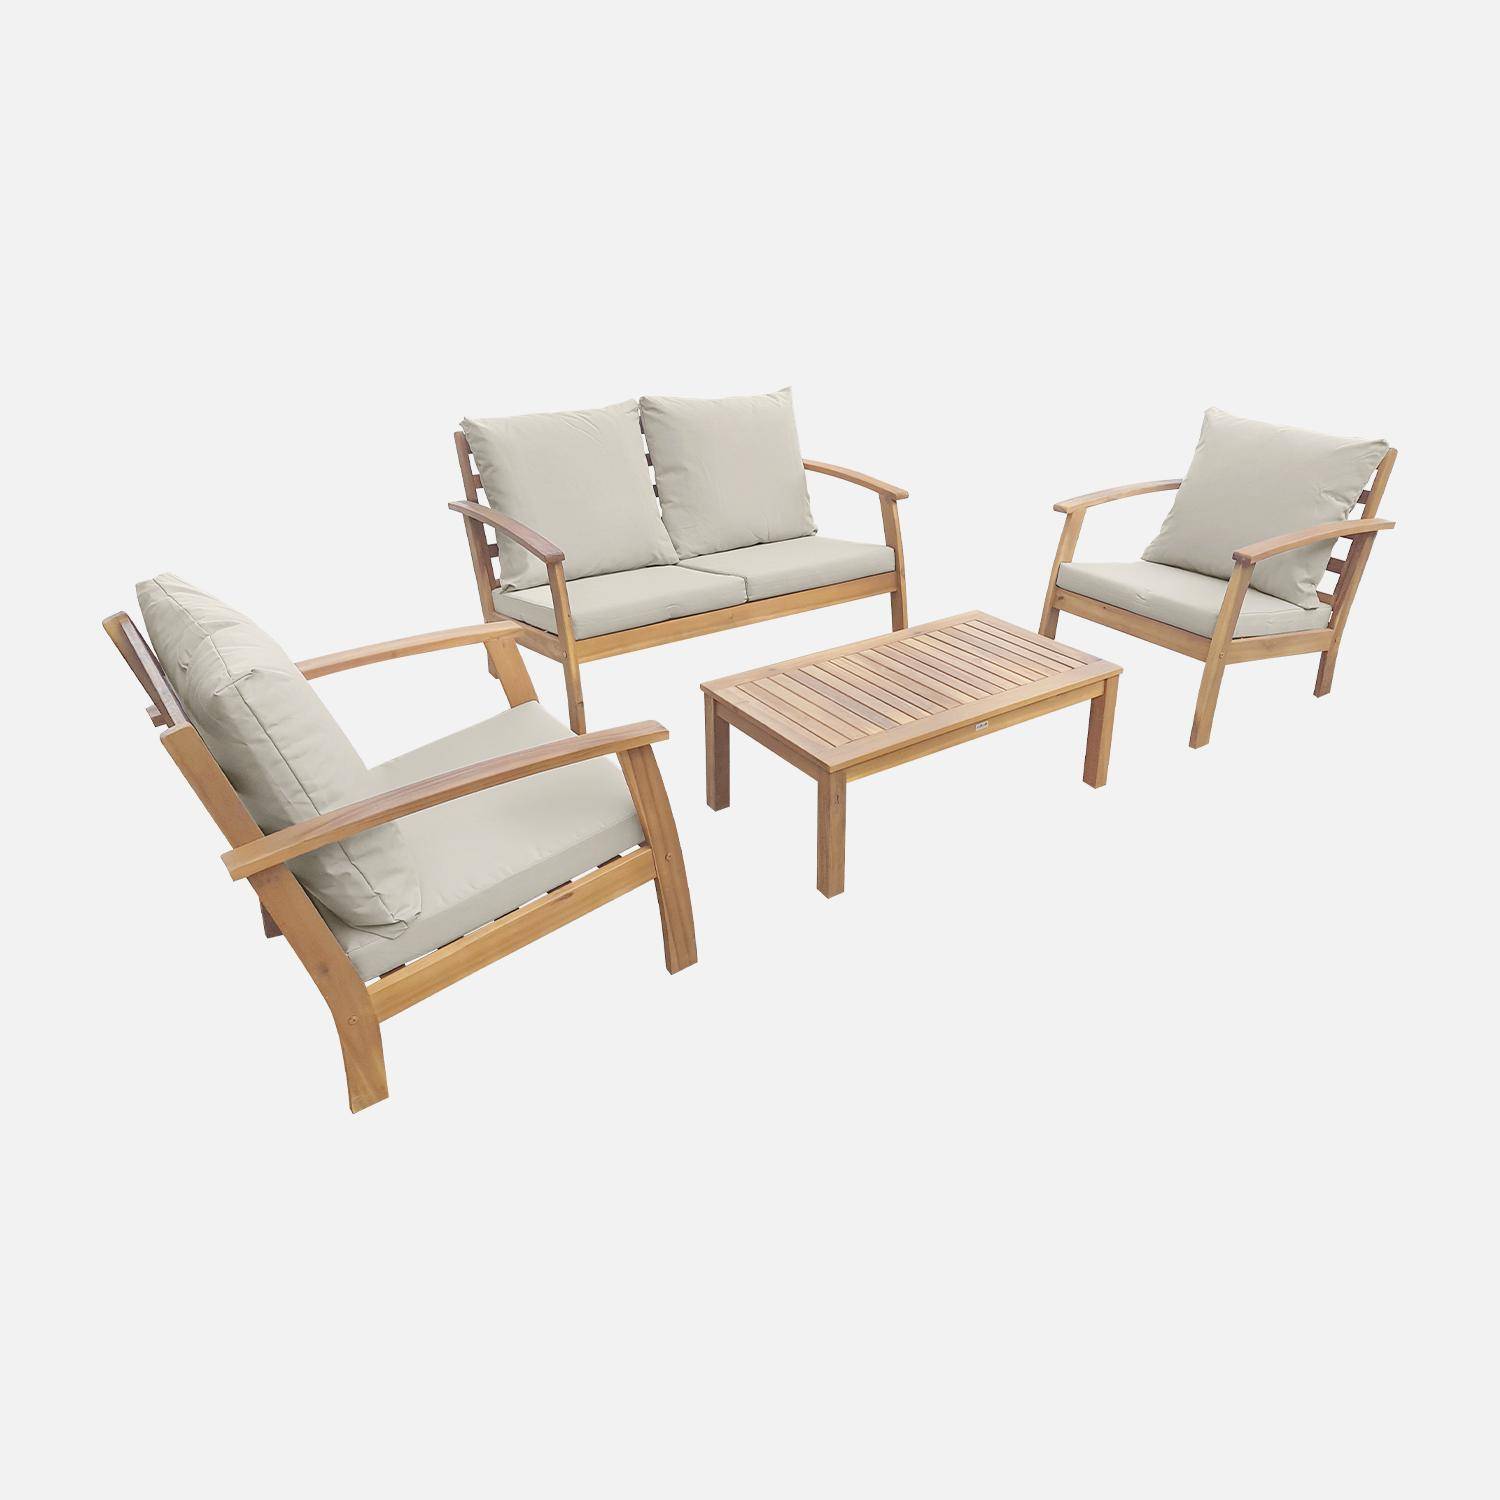 Salon de jardin en bois 4 places - Ushuaïa - Coussins écrus, canapé, fauteuils et table basse en acacia, design Photo3